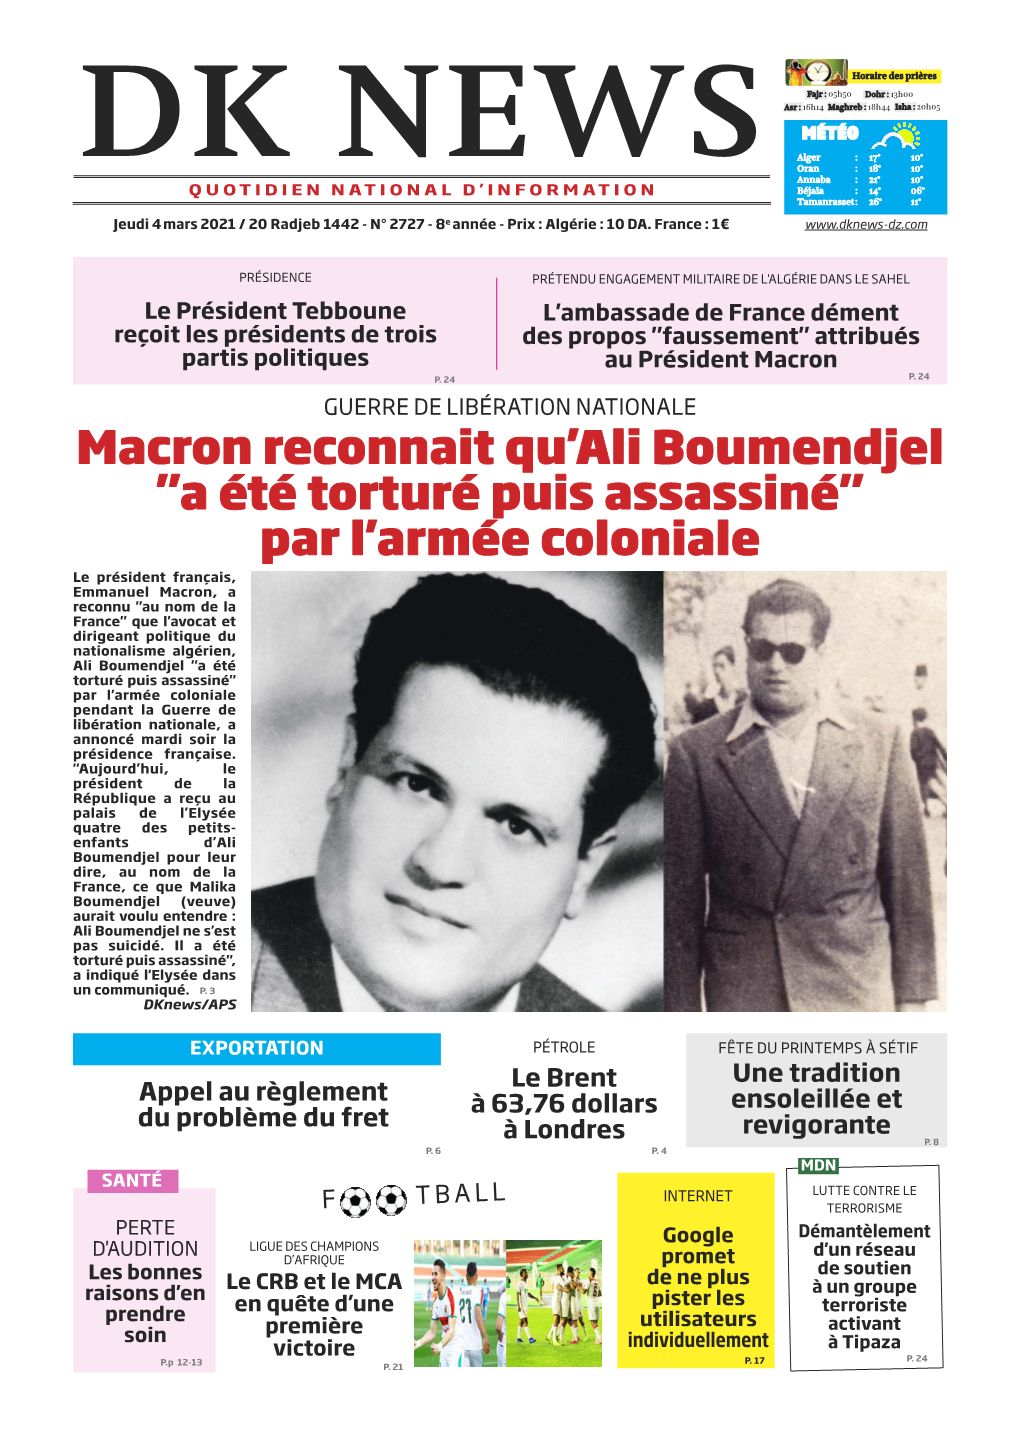 Macron Reconnait Qu'ali Boumendjel "A Été Torturé Puis Assassiné" Par L'armée Coloniale